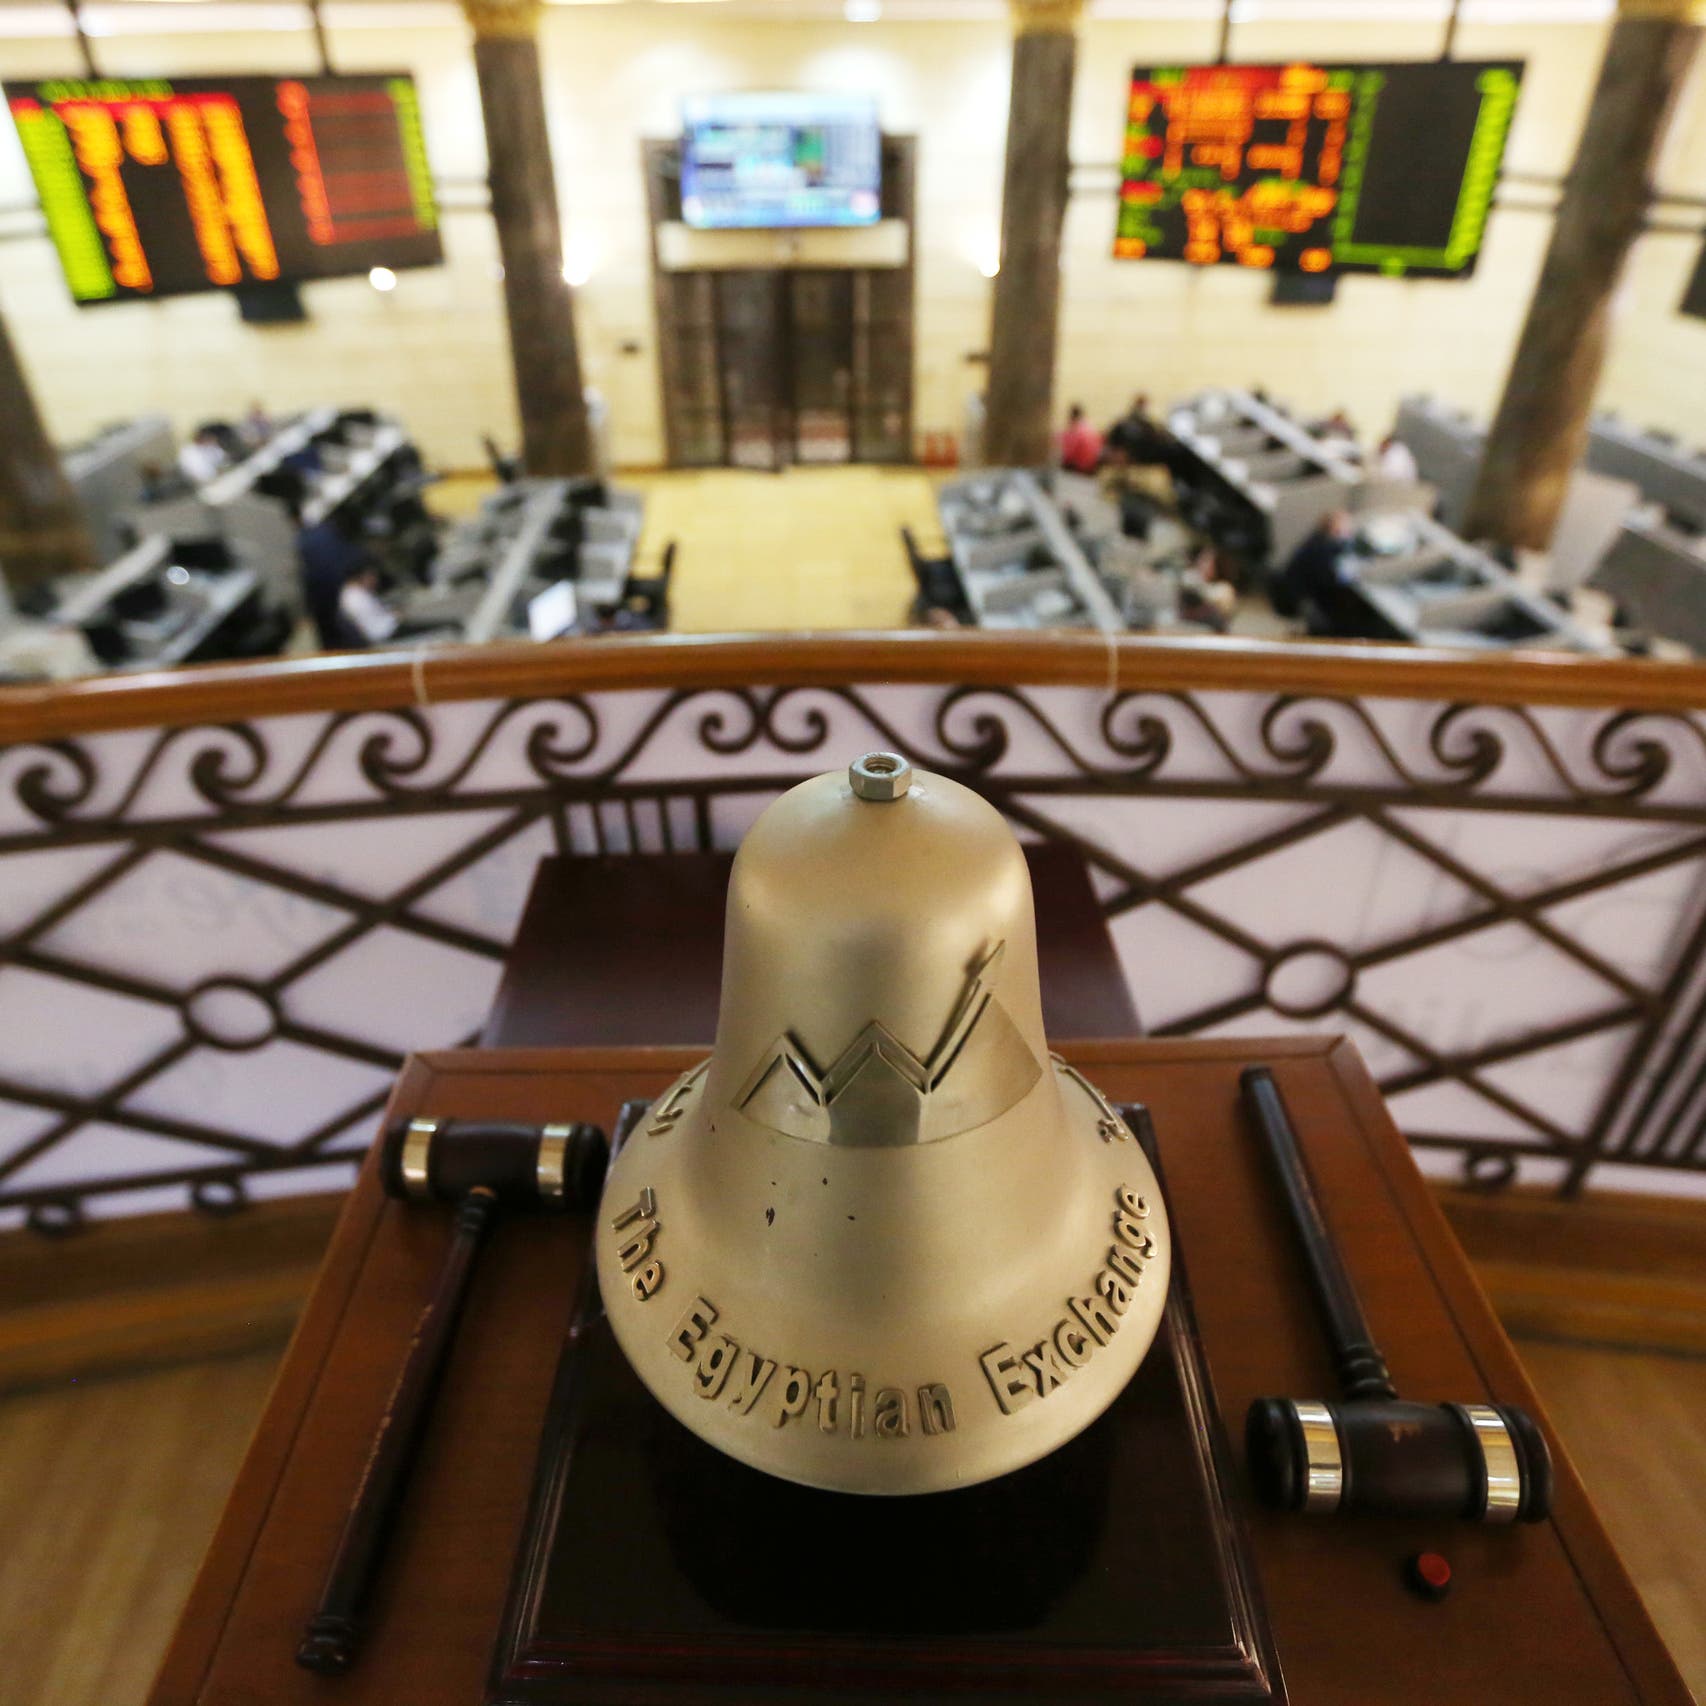 البورصة المصرية تعمق خسائرها الأسبوعية بـ16 مليار جنيه